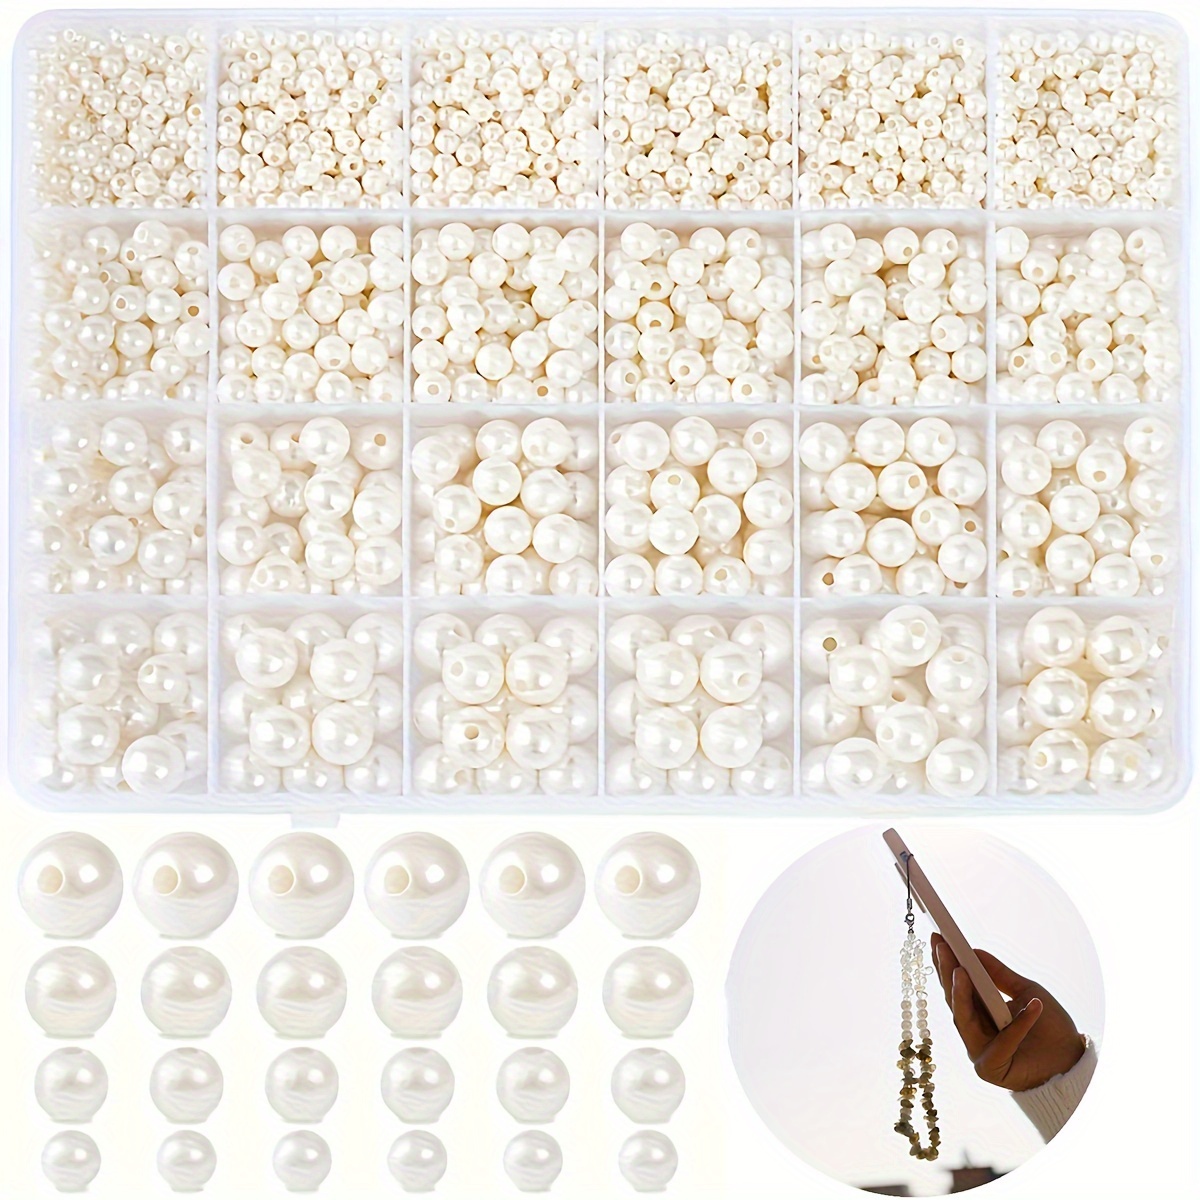 

Ensemble de 1900 perles en acrylique nacrées en blanc, tailles assorties de 4 à 10 mm, sans pierre précieuse, pour la création de bijoux DIY, les breloques de téléphone et les décorations artisanales